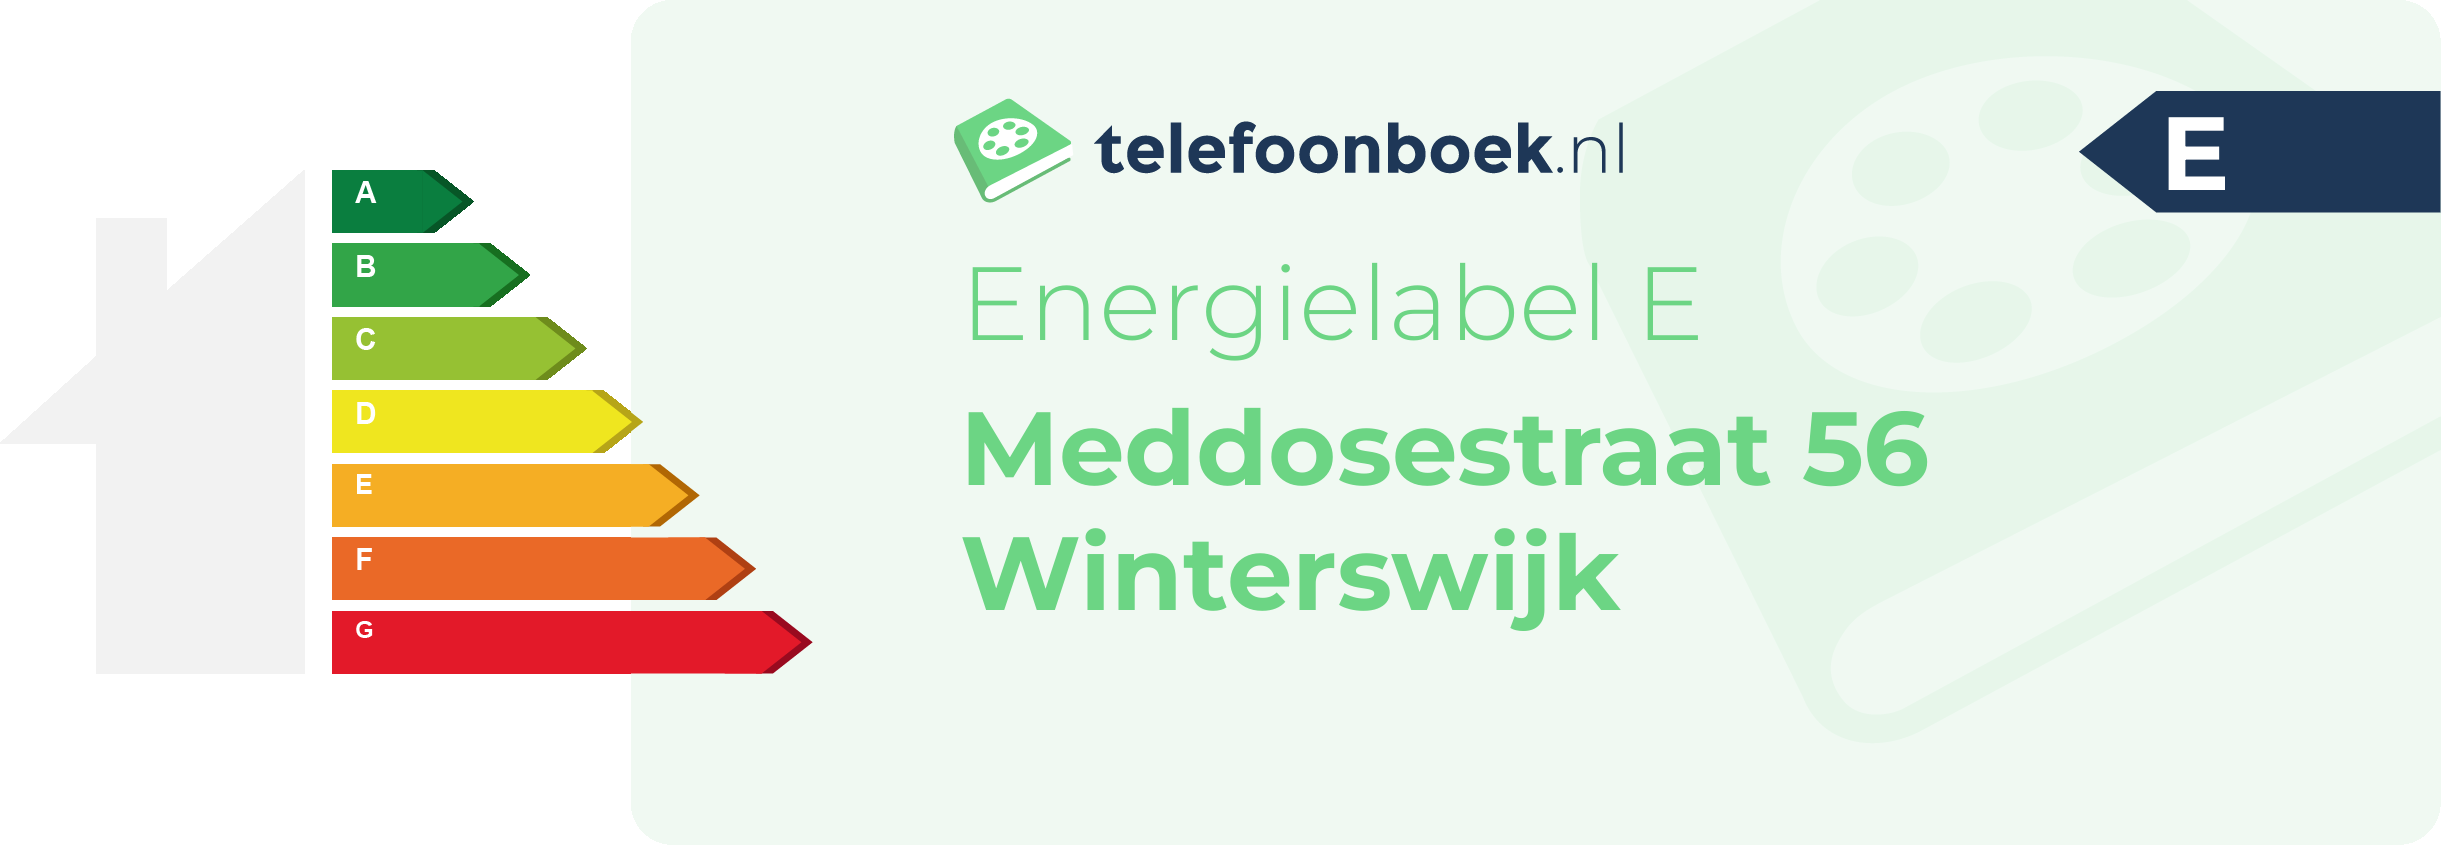 Energielabel Meddosestraat 56 Winterswijk